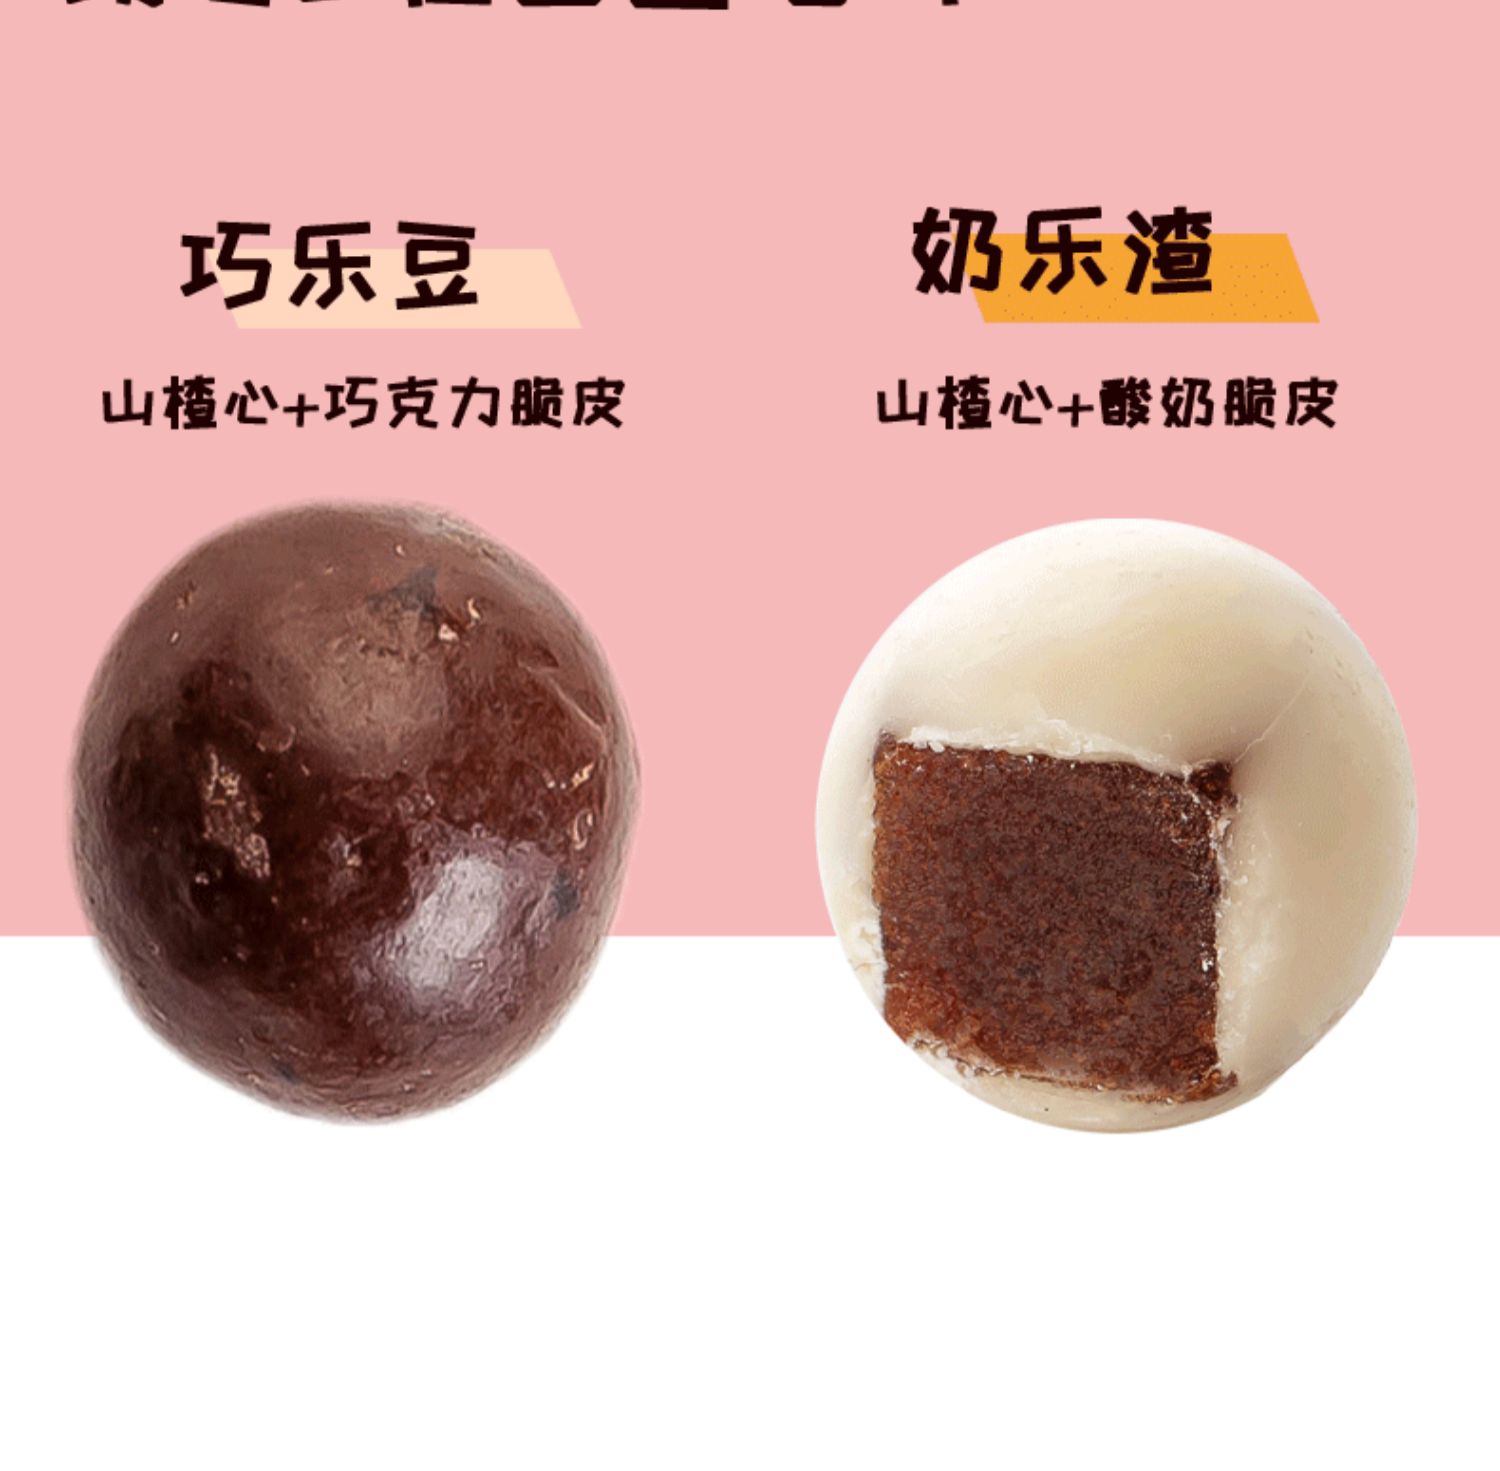 【怡咔】网红酸奶山楂球250g